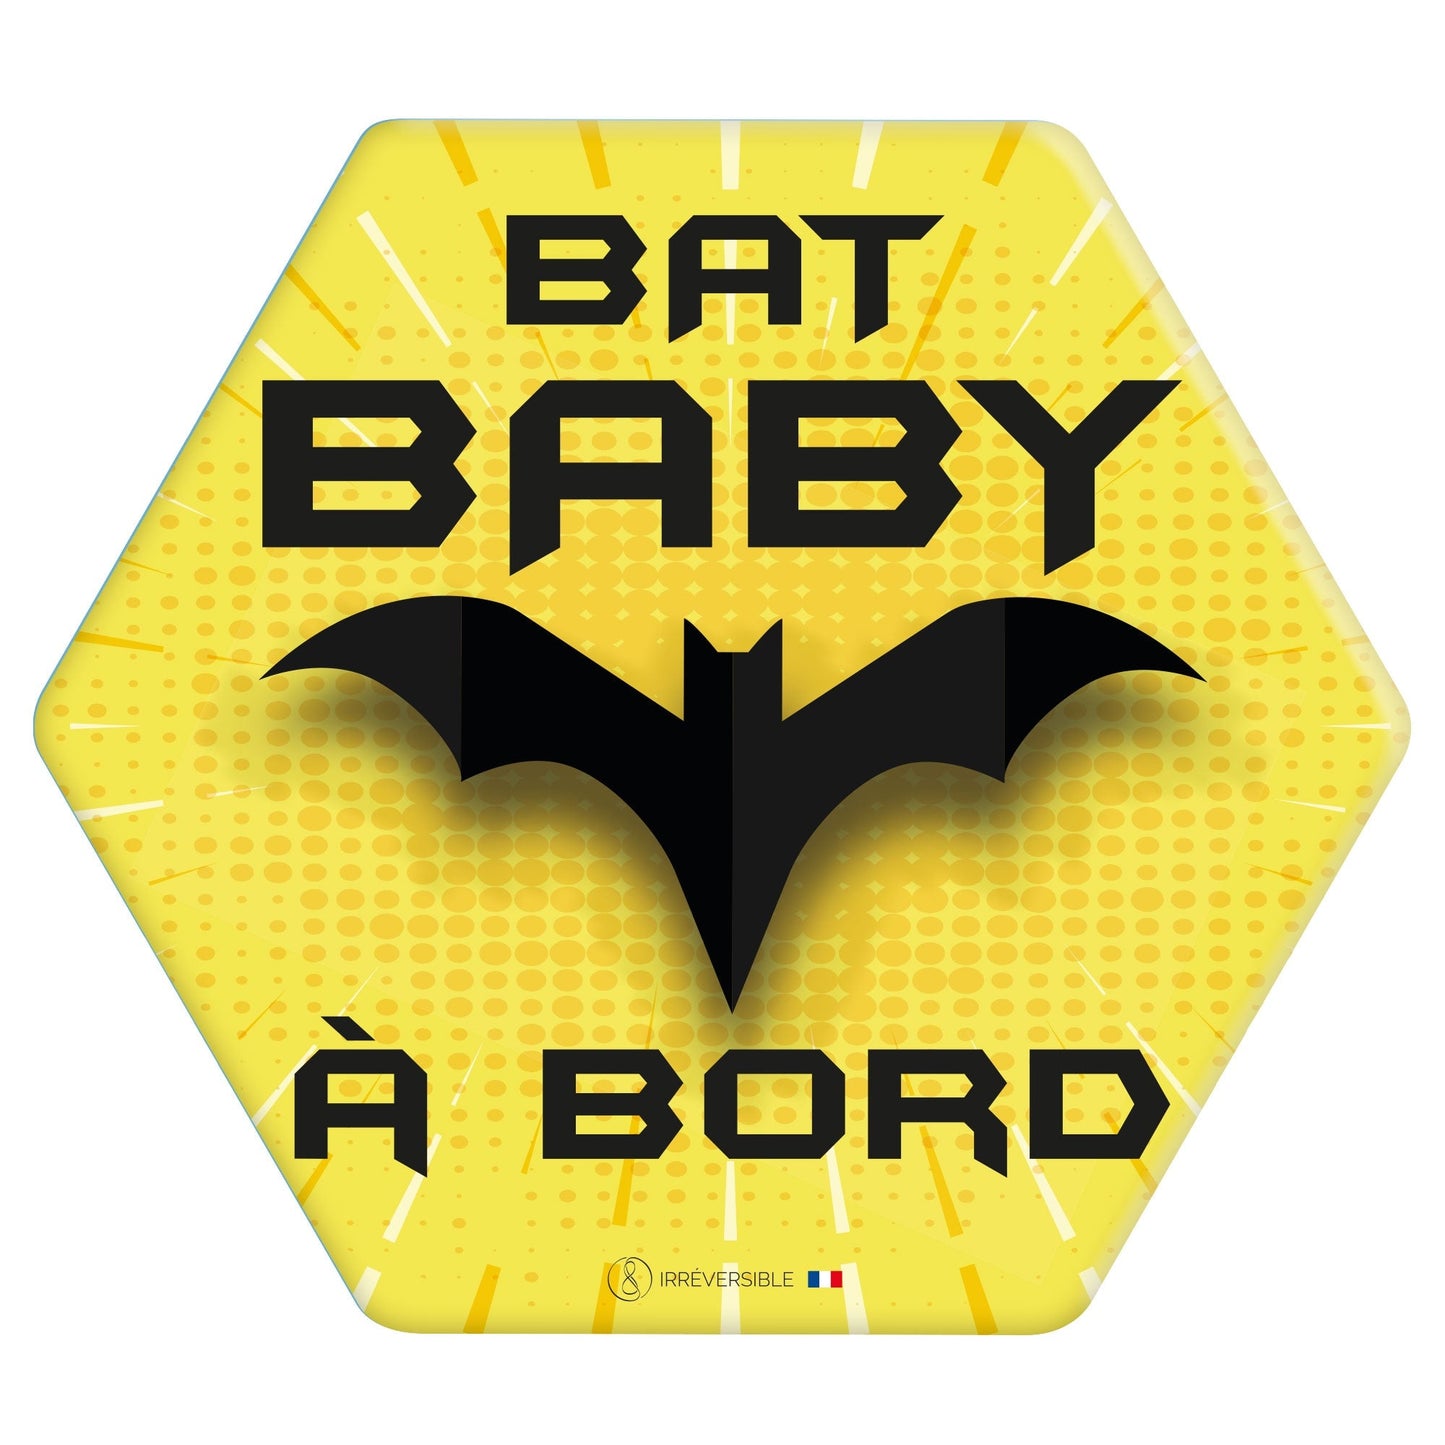 bébé a bord adhésif voiture idée cadeau naissance baby shower - bat baby batman jaune super héro 